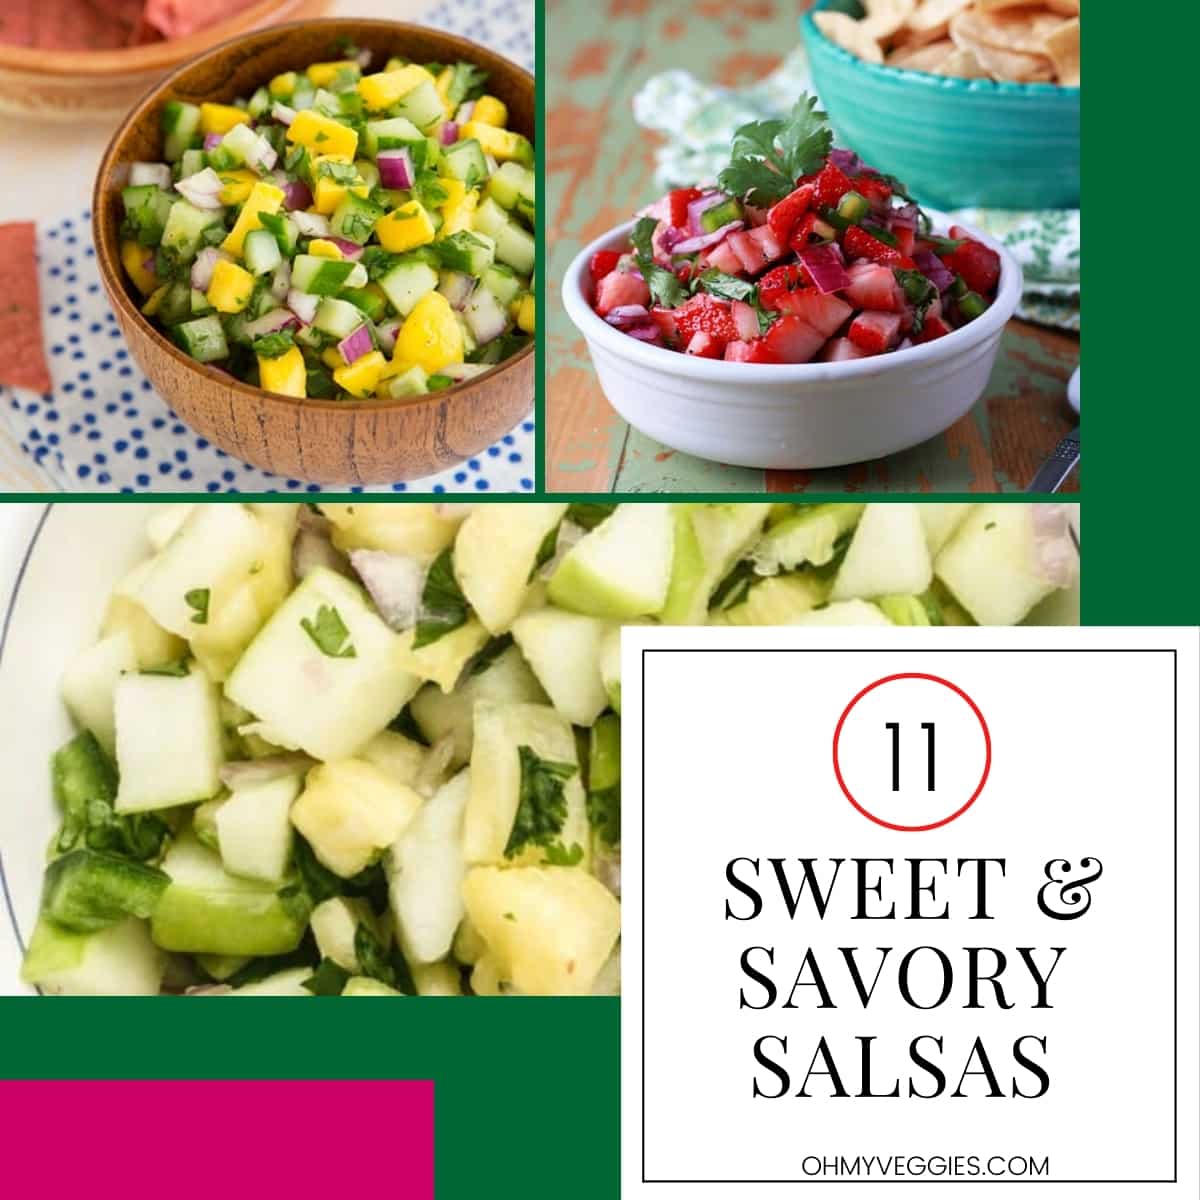 Sweet & Savory Salsas